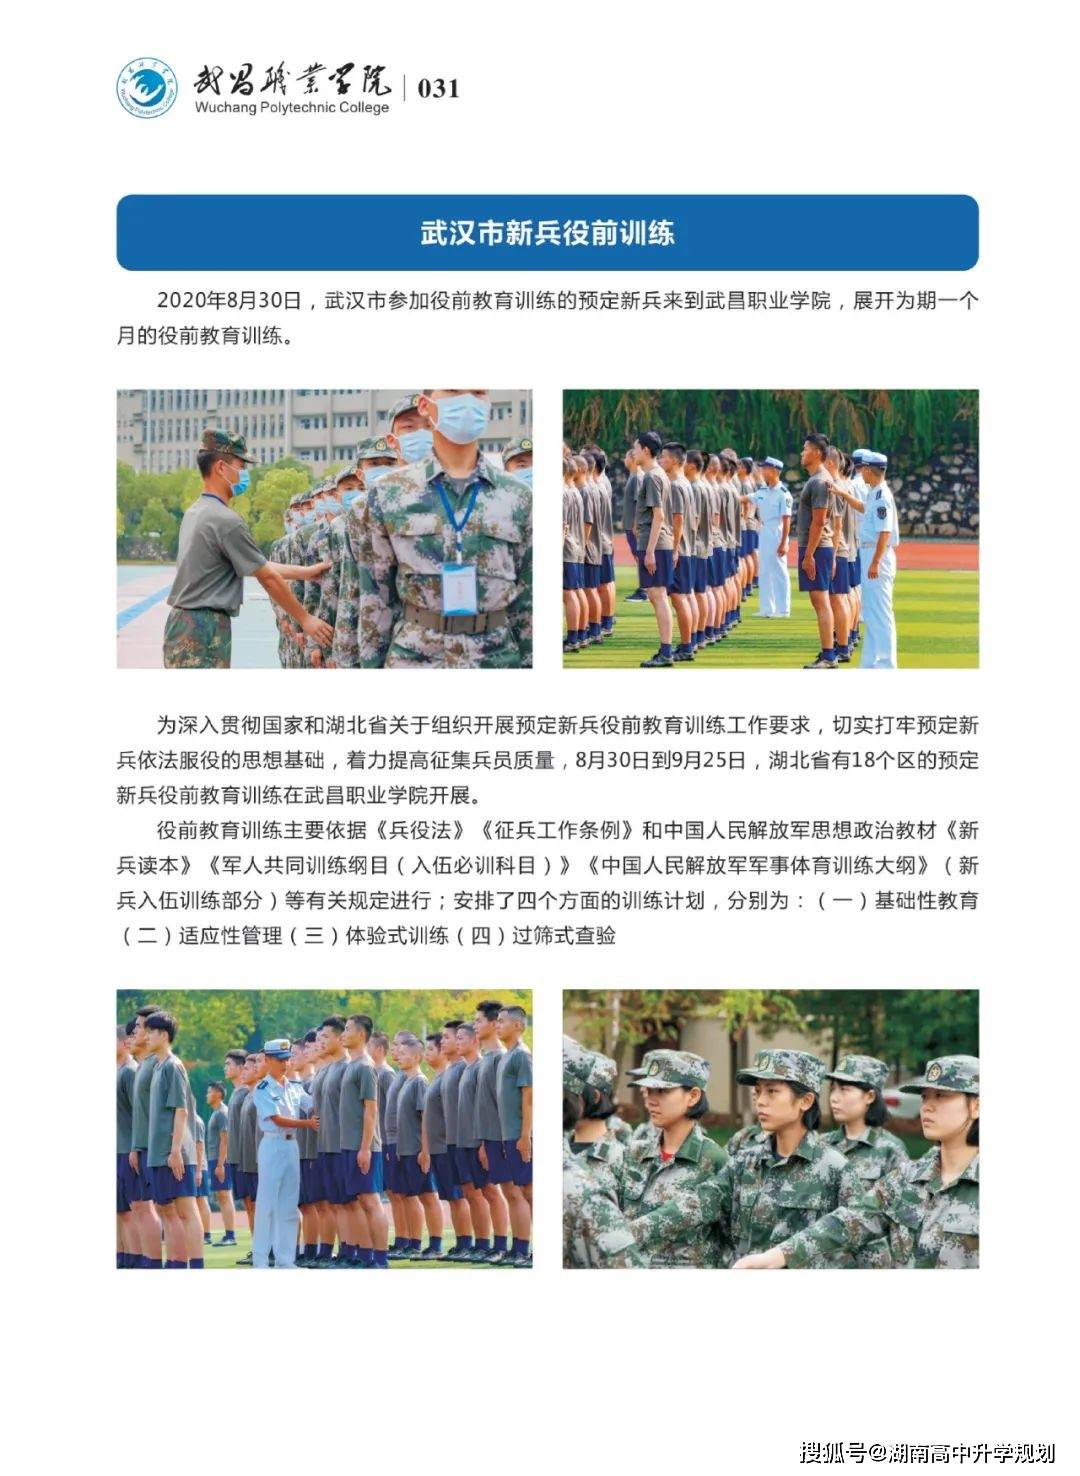 高考300分军队定向培养士官院校武昌职业学院定向士官生招生简章